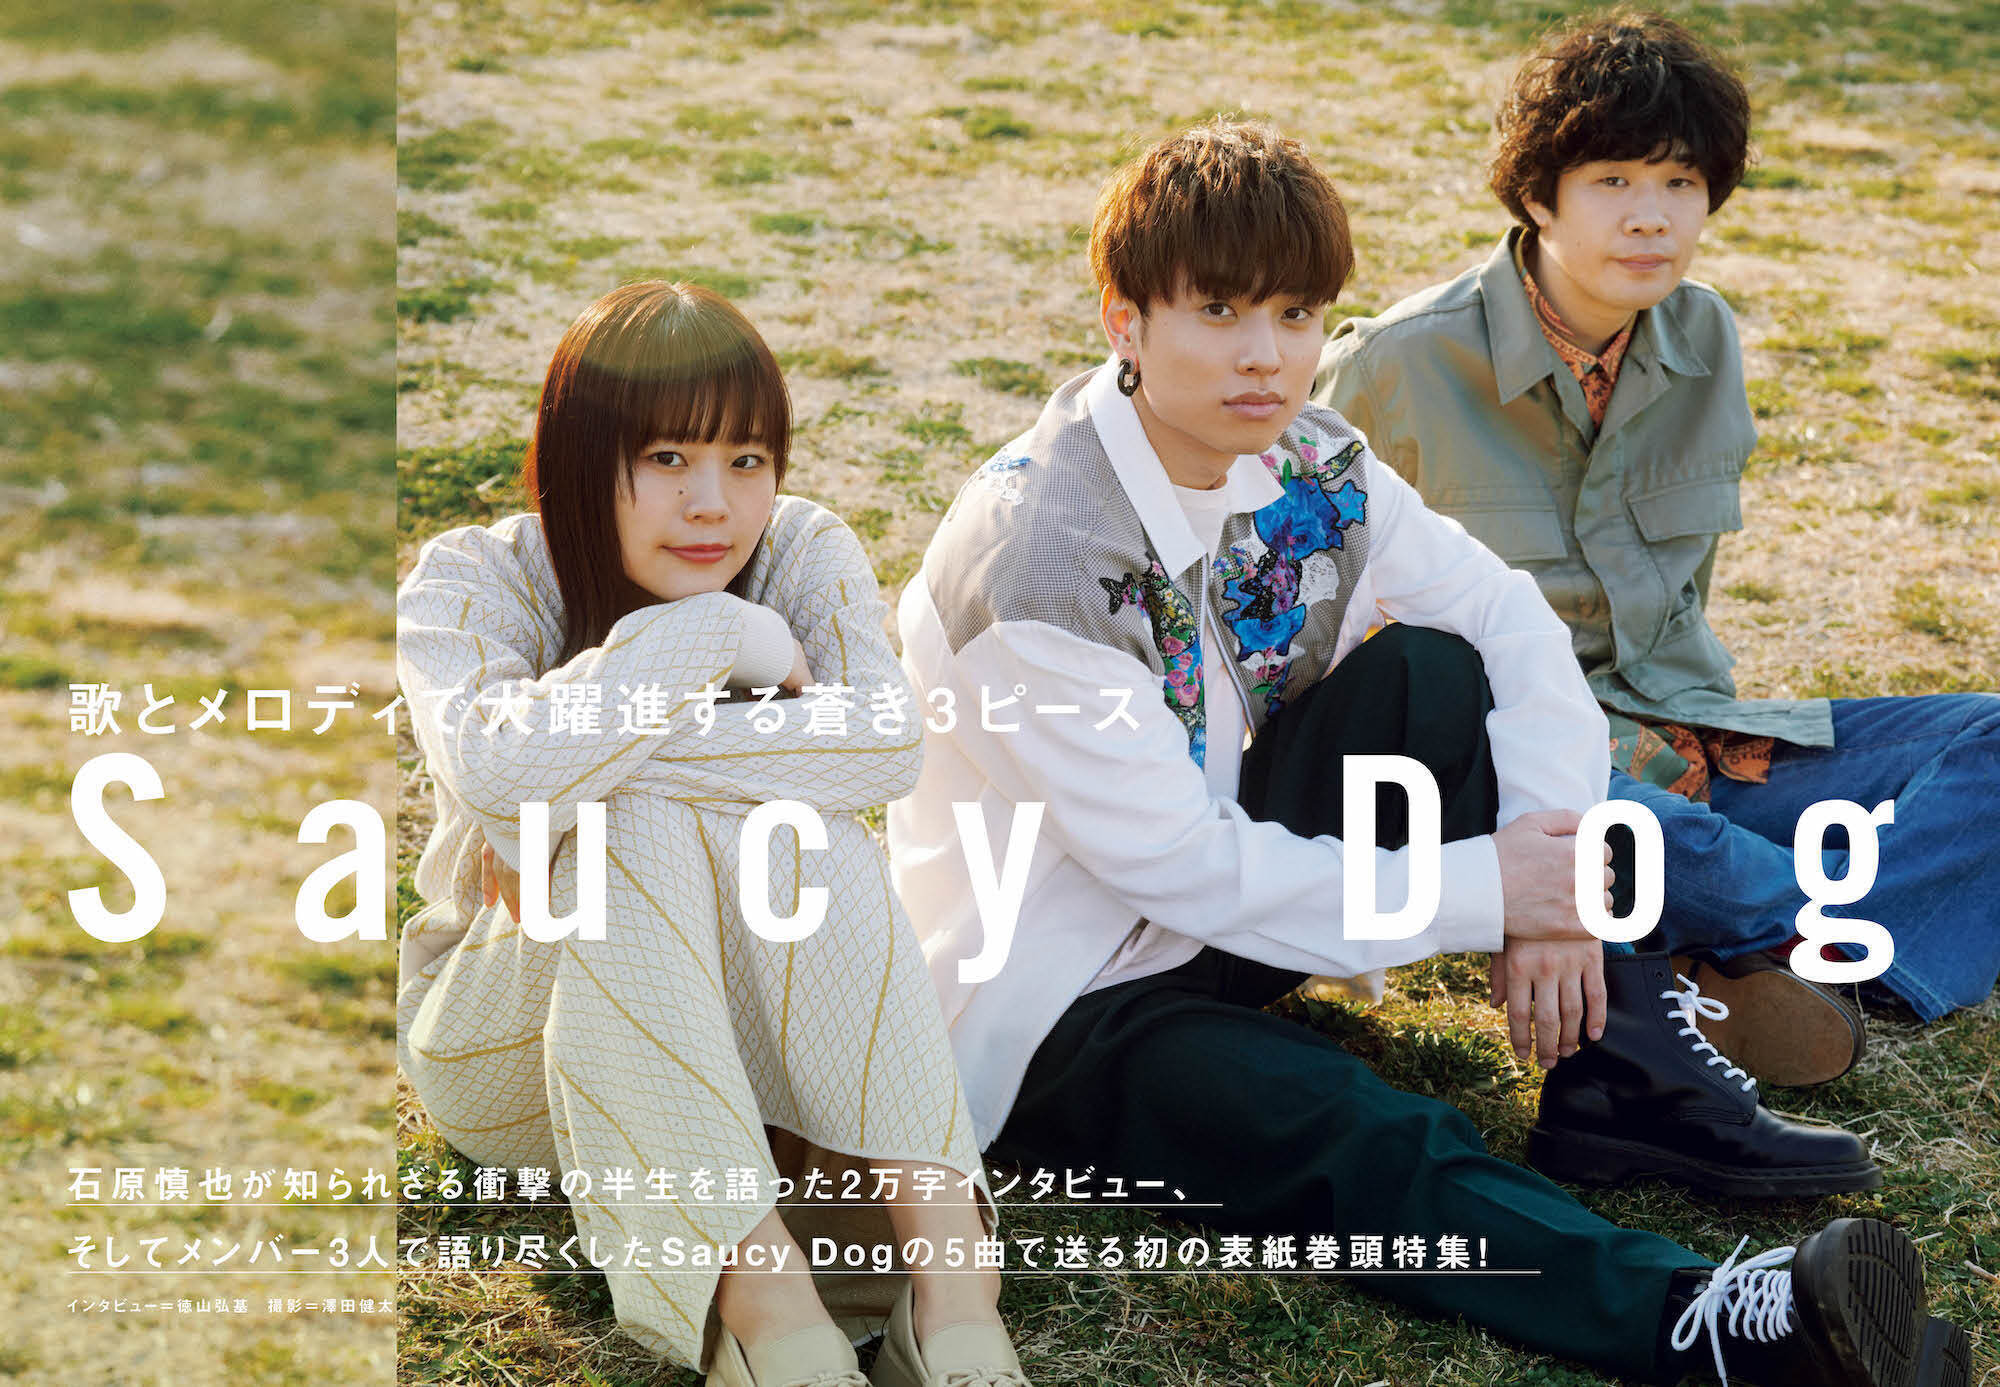 【JAPAN最新号】Saucy Dog 石原慎也が知られざる衝撃の半生を語った2万字インタビュー、そしてメンバー3人で語り尽くしたSaucy Dogの5曲